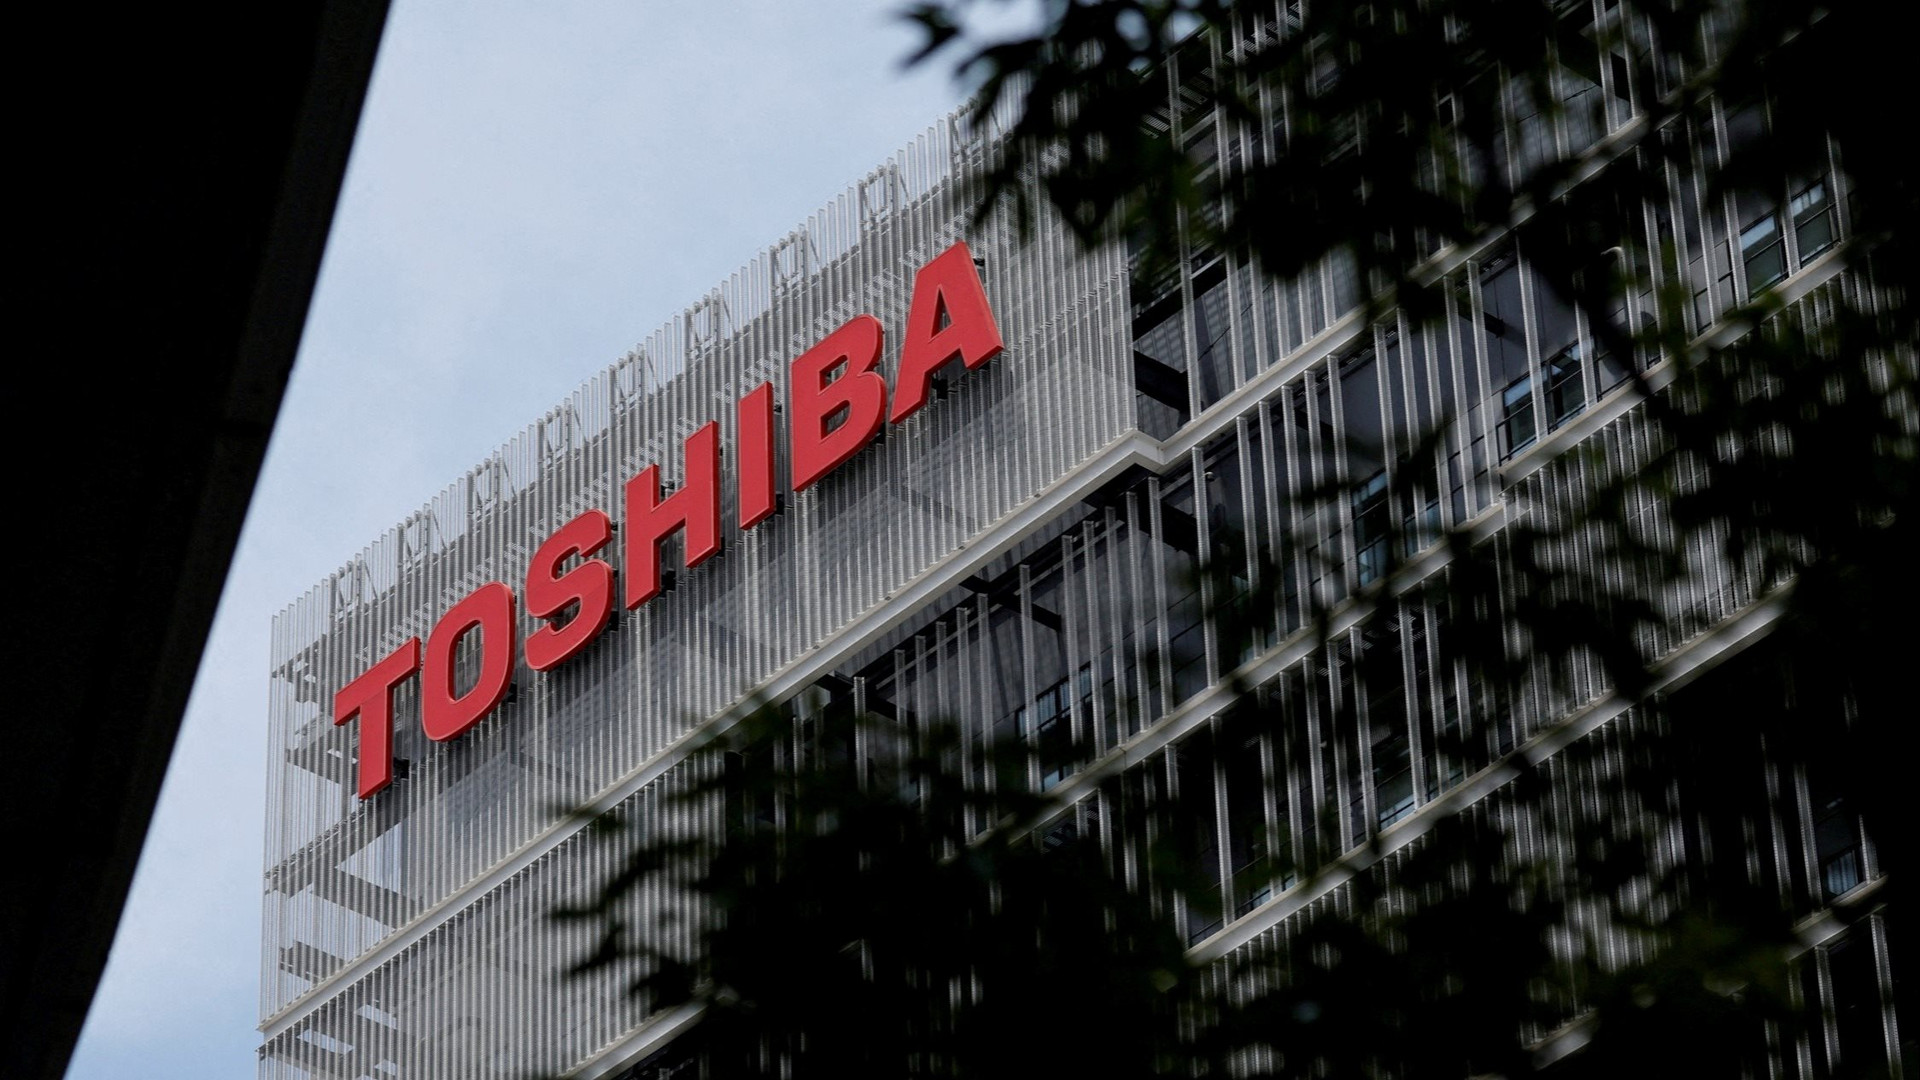 Toshiba - Hãng điện tử 148 năm của Nhật Bản chốt bán mình với giá 15,3 tỷ USD?